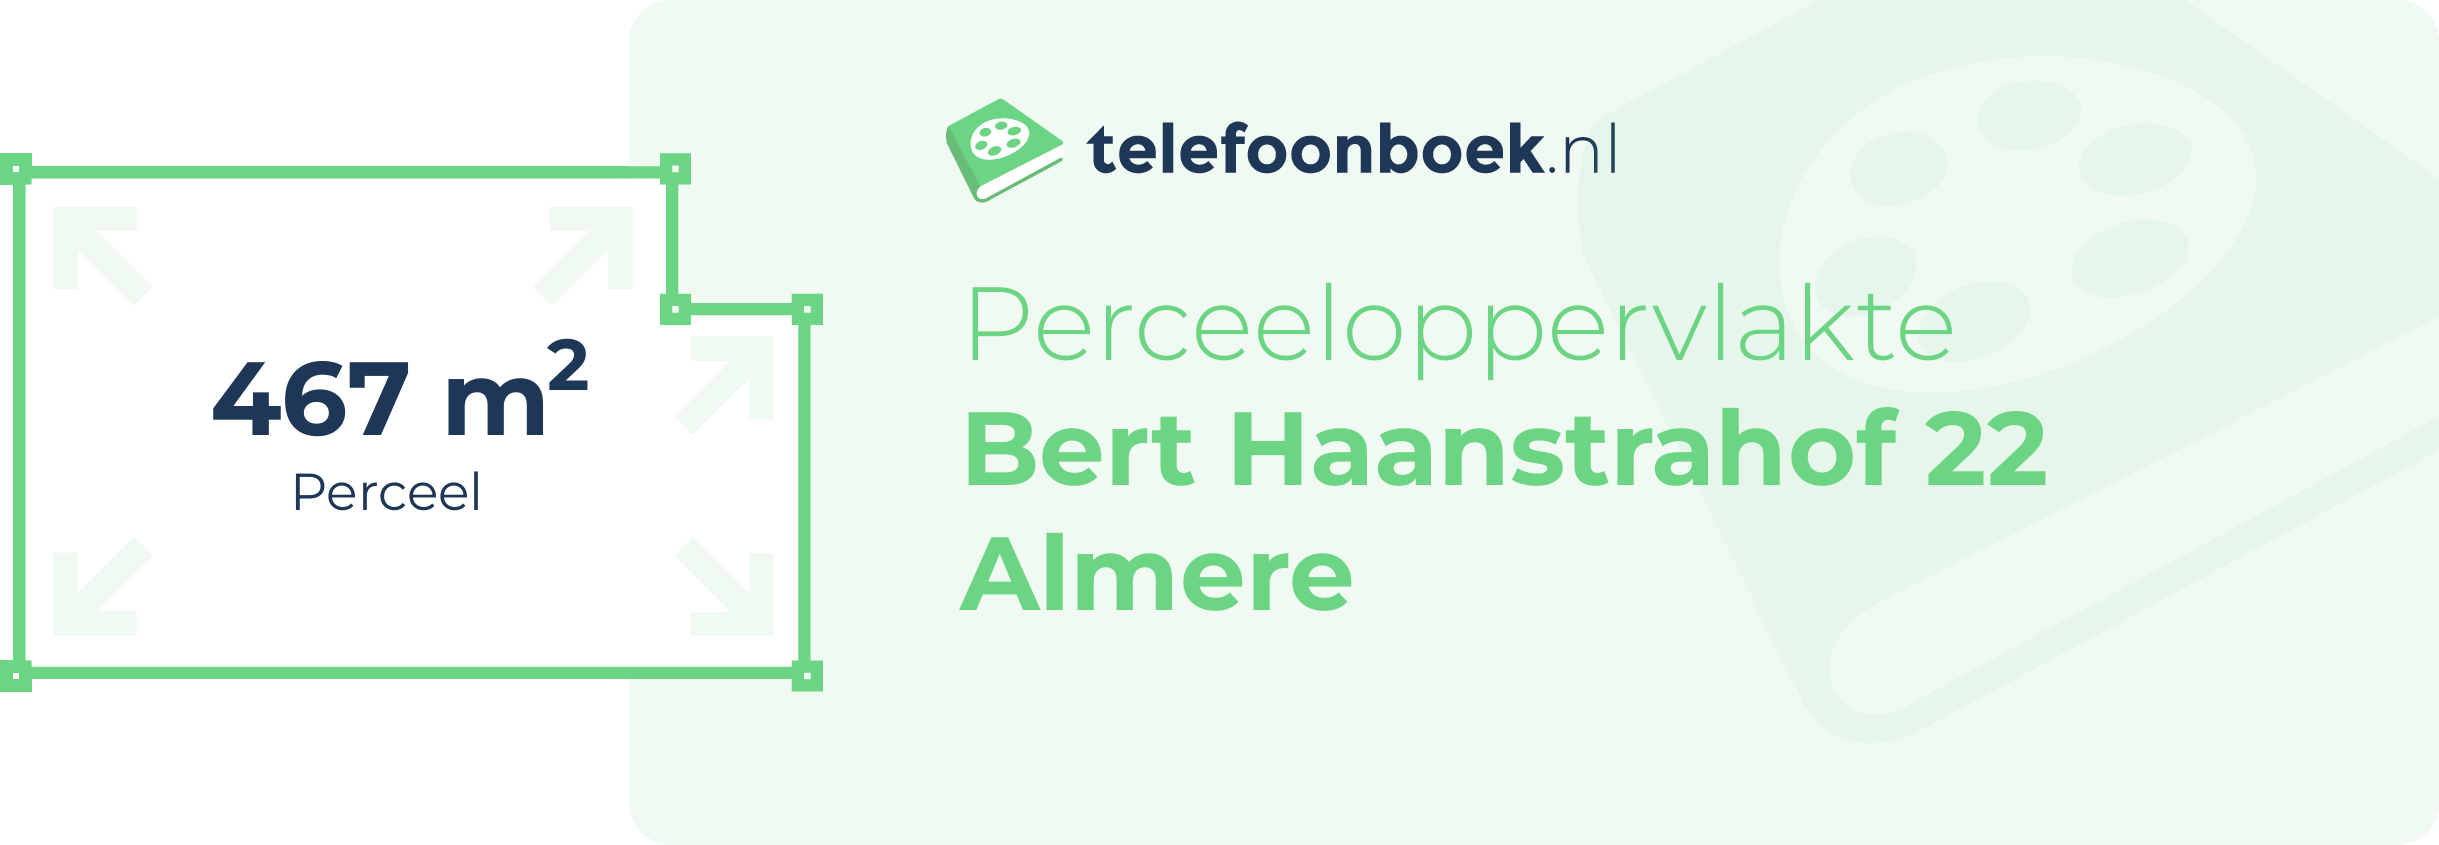 Perceeloppervlakte Bert Haanstrahof 22 Almere